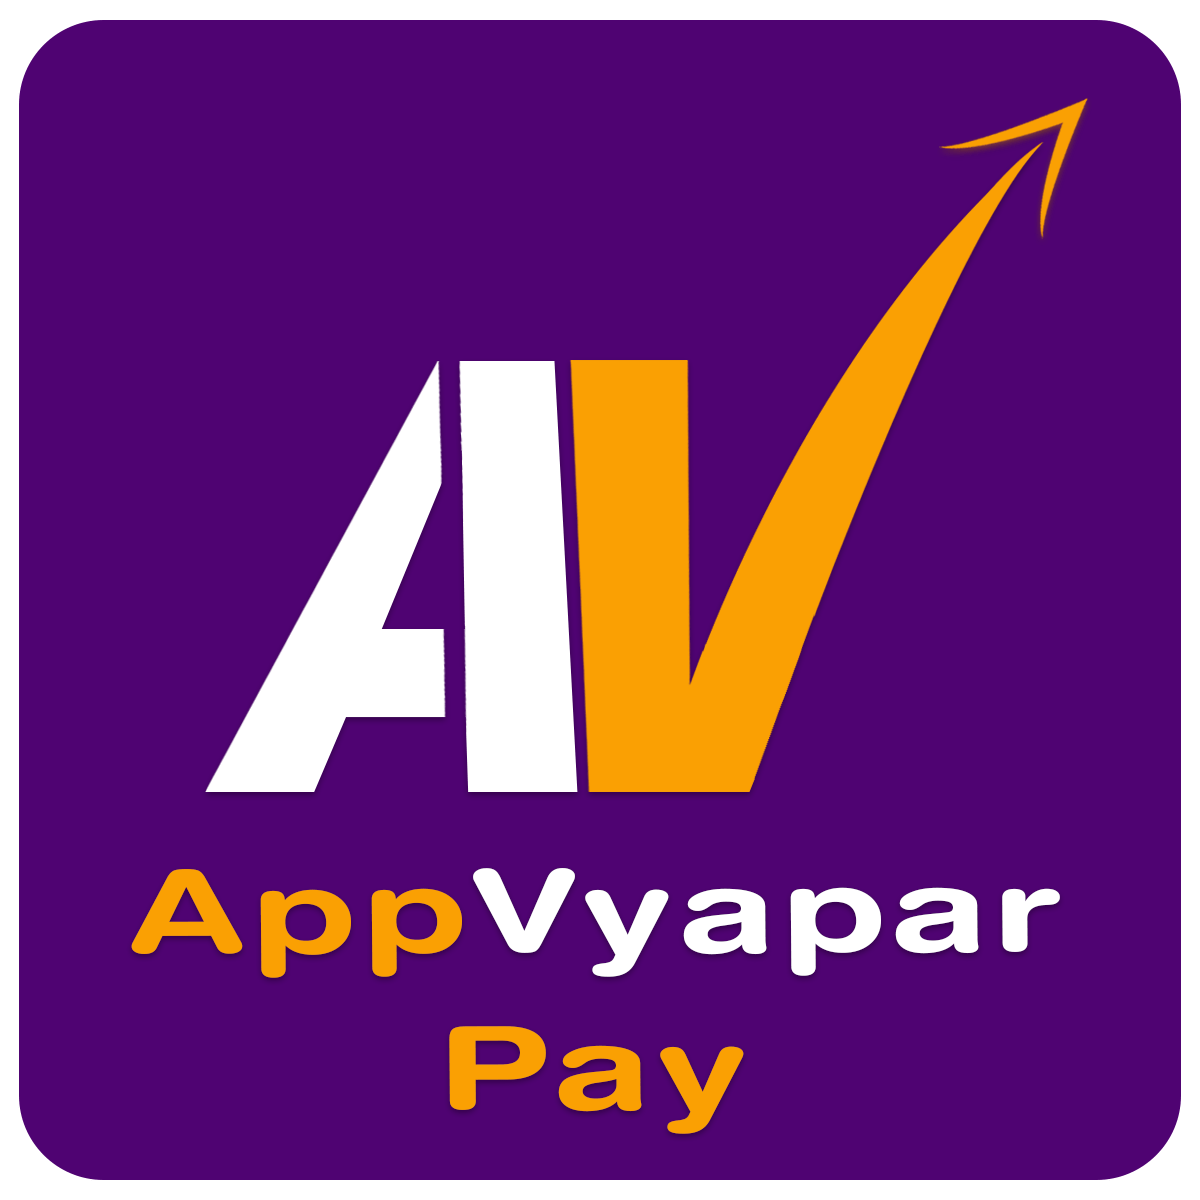 AppVyapar Pay